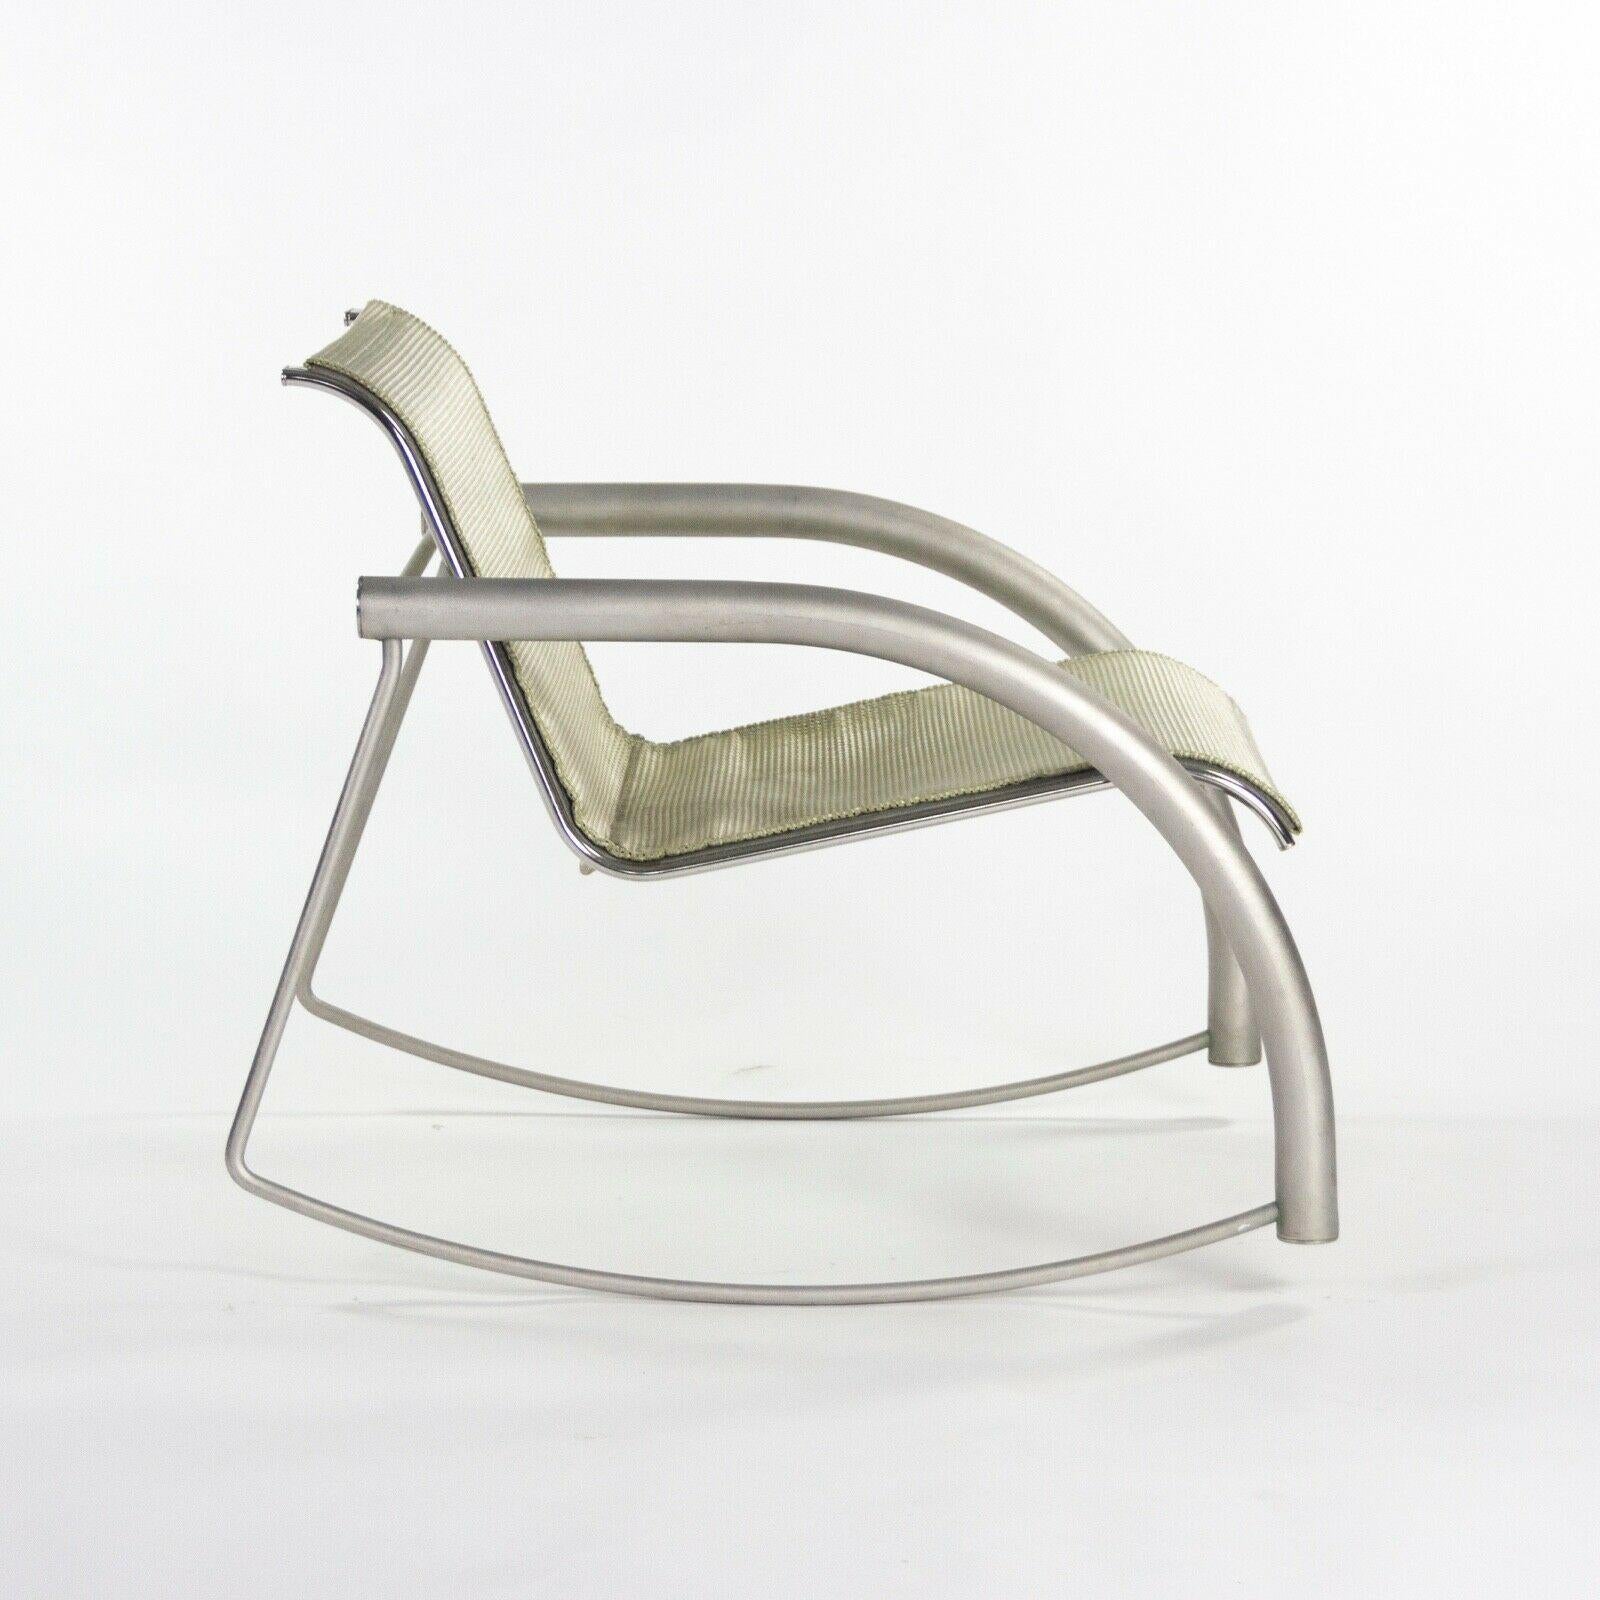 Américain Prototype de chaise à bascule Richard Schultz 2002 Collection en acier inoxydable et maille